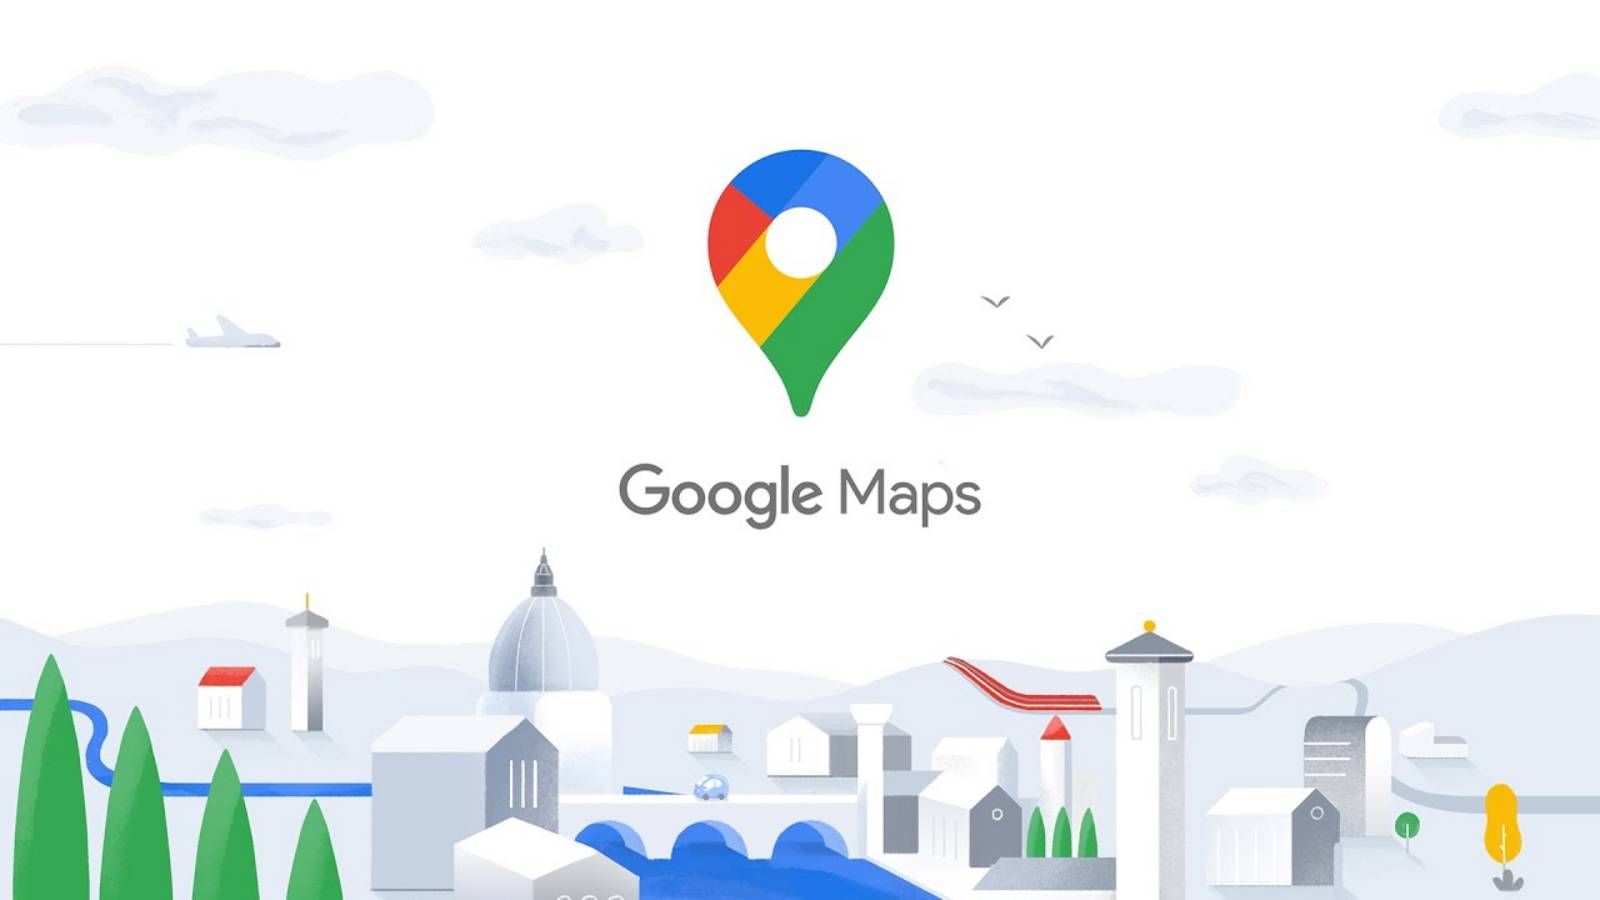 Google Maps a été mis à jour, quelles nouveautés arrivent sur les téléphones et les tablettes